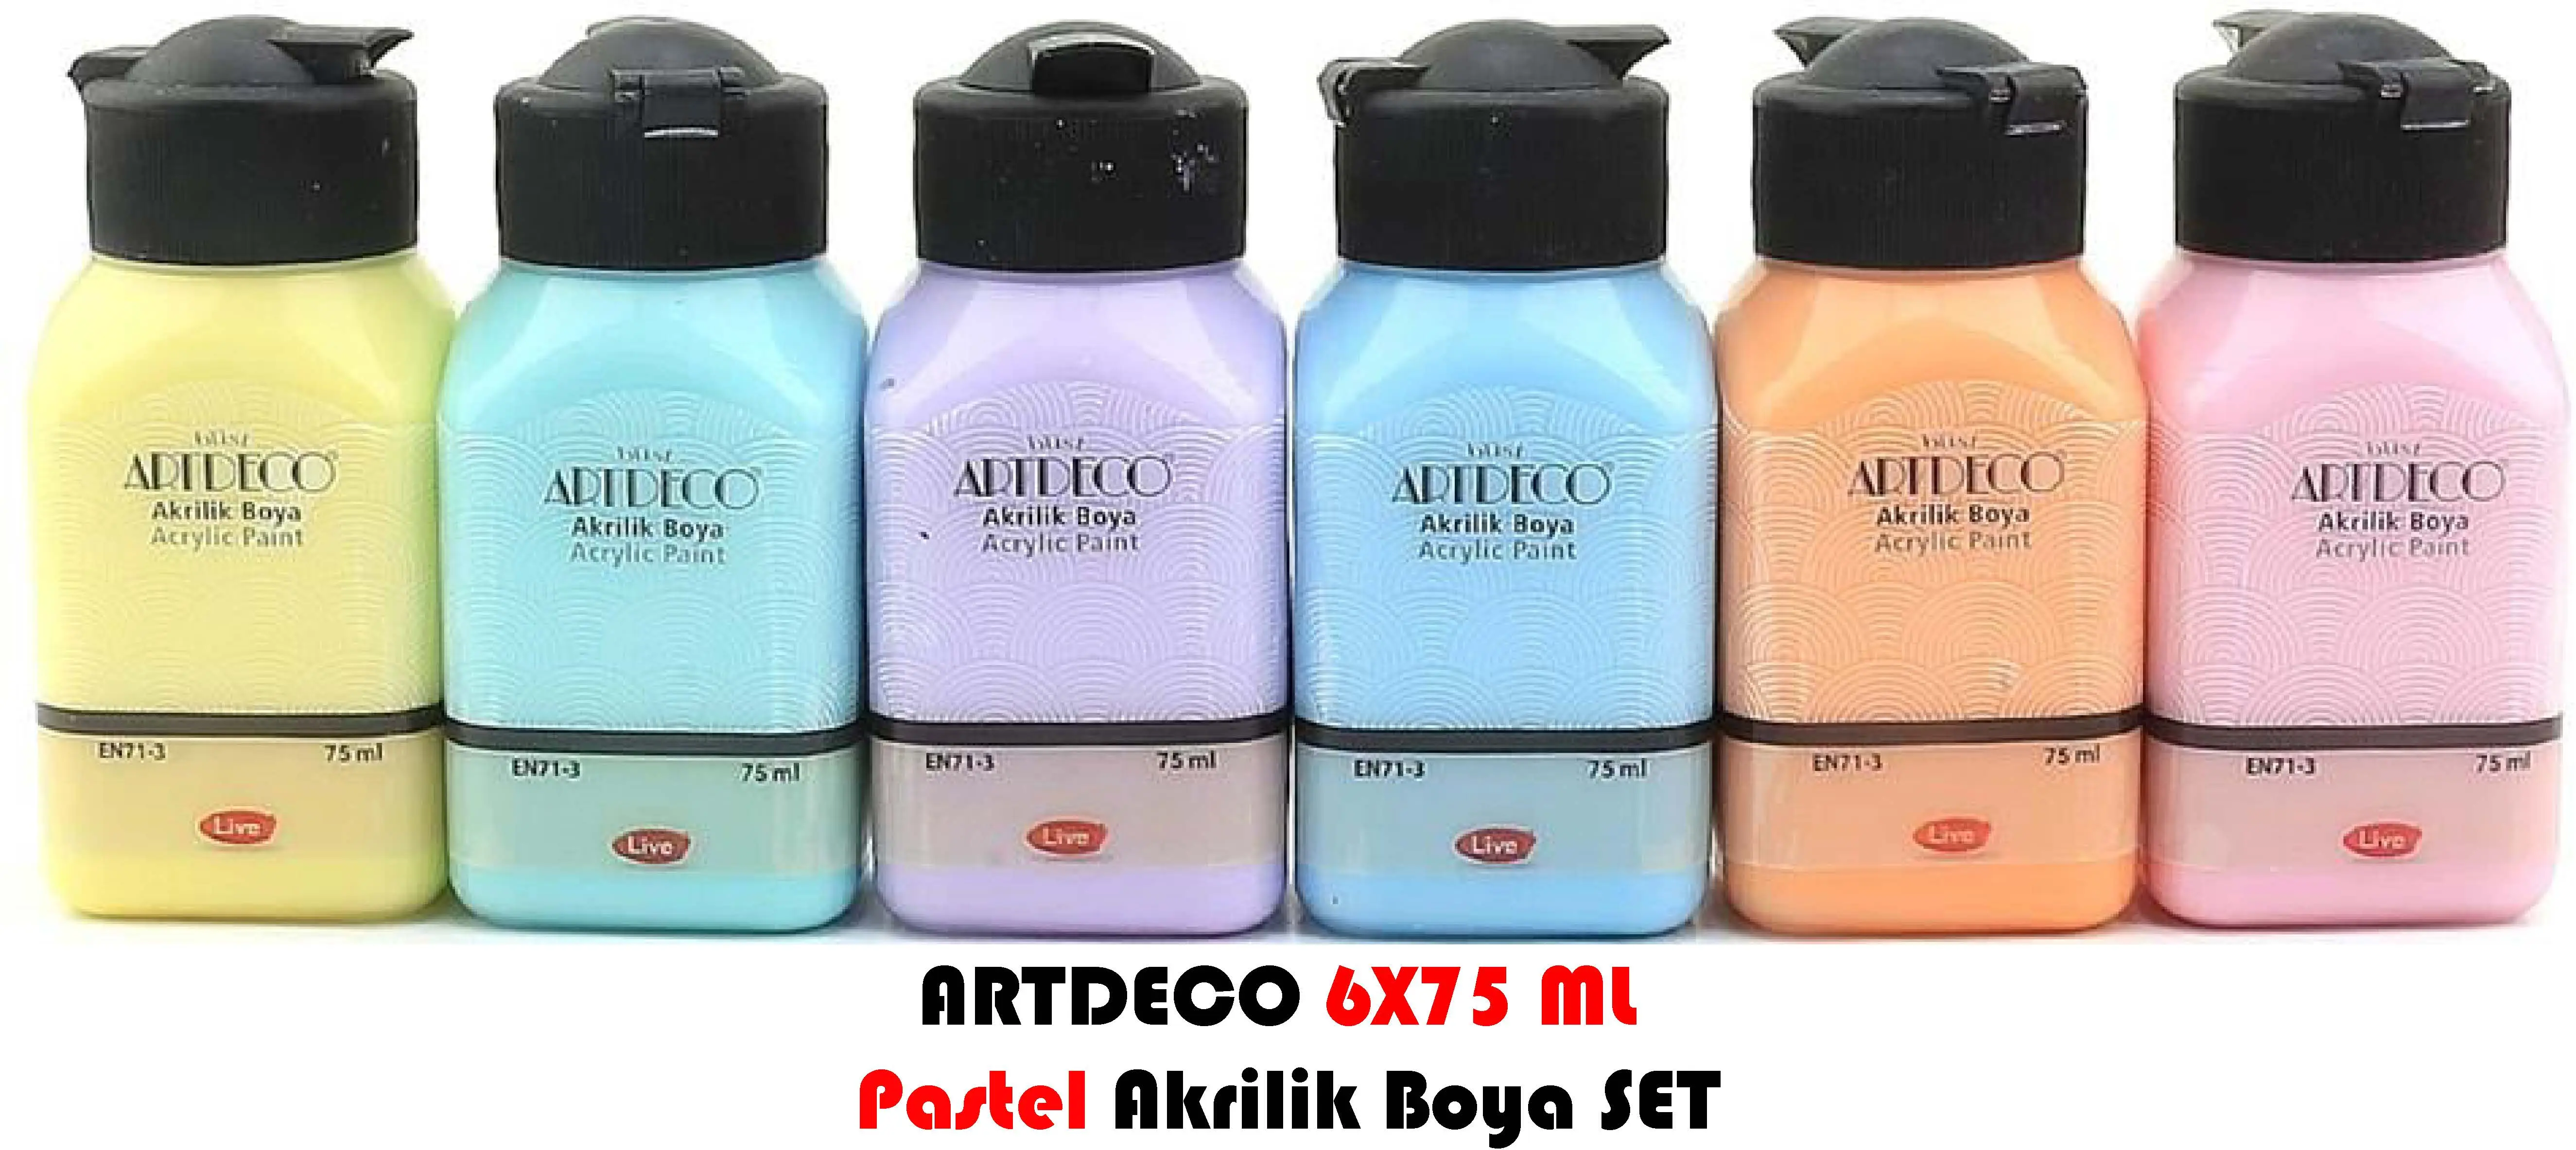 Artdeco Akrilik Boya SET 12 Adet 140 ml + 6 Adet 75ml  PASTEL